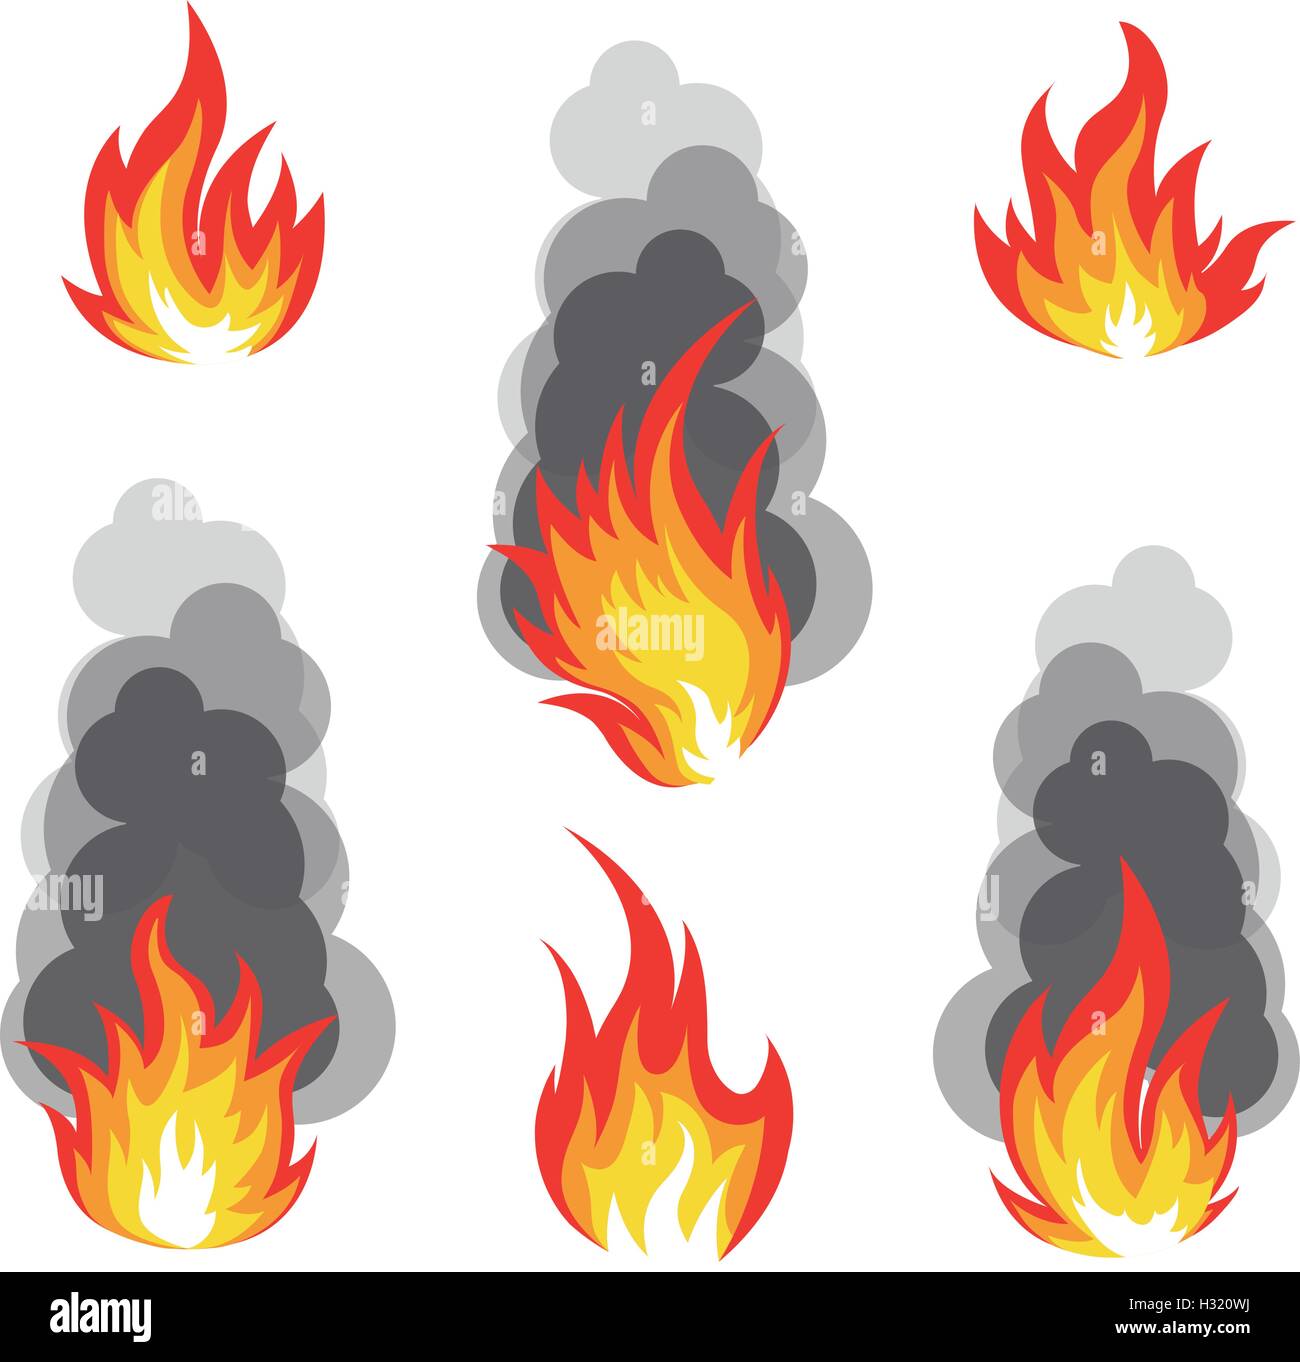 Isolierte Abstrakt rot-orange Farbe Feuer Flamme Logo auf weißem Hintergrund gesetzt. Lagerfeuer mit Rauch Logo-Sammlung. Scharfes Essen-Symbol. Hitze-Symbol. Heiße Energie Zeichen. Vektor-Illustration. Stock Vektor